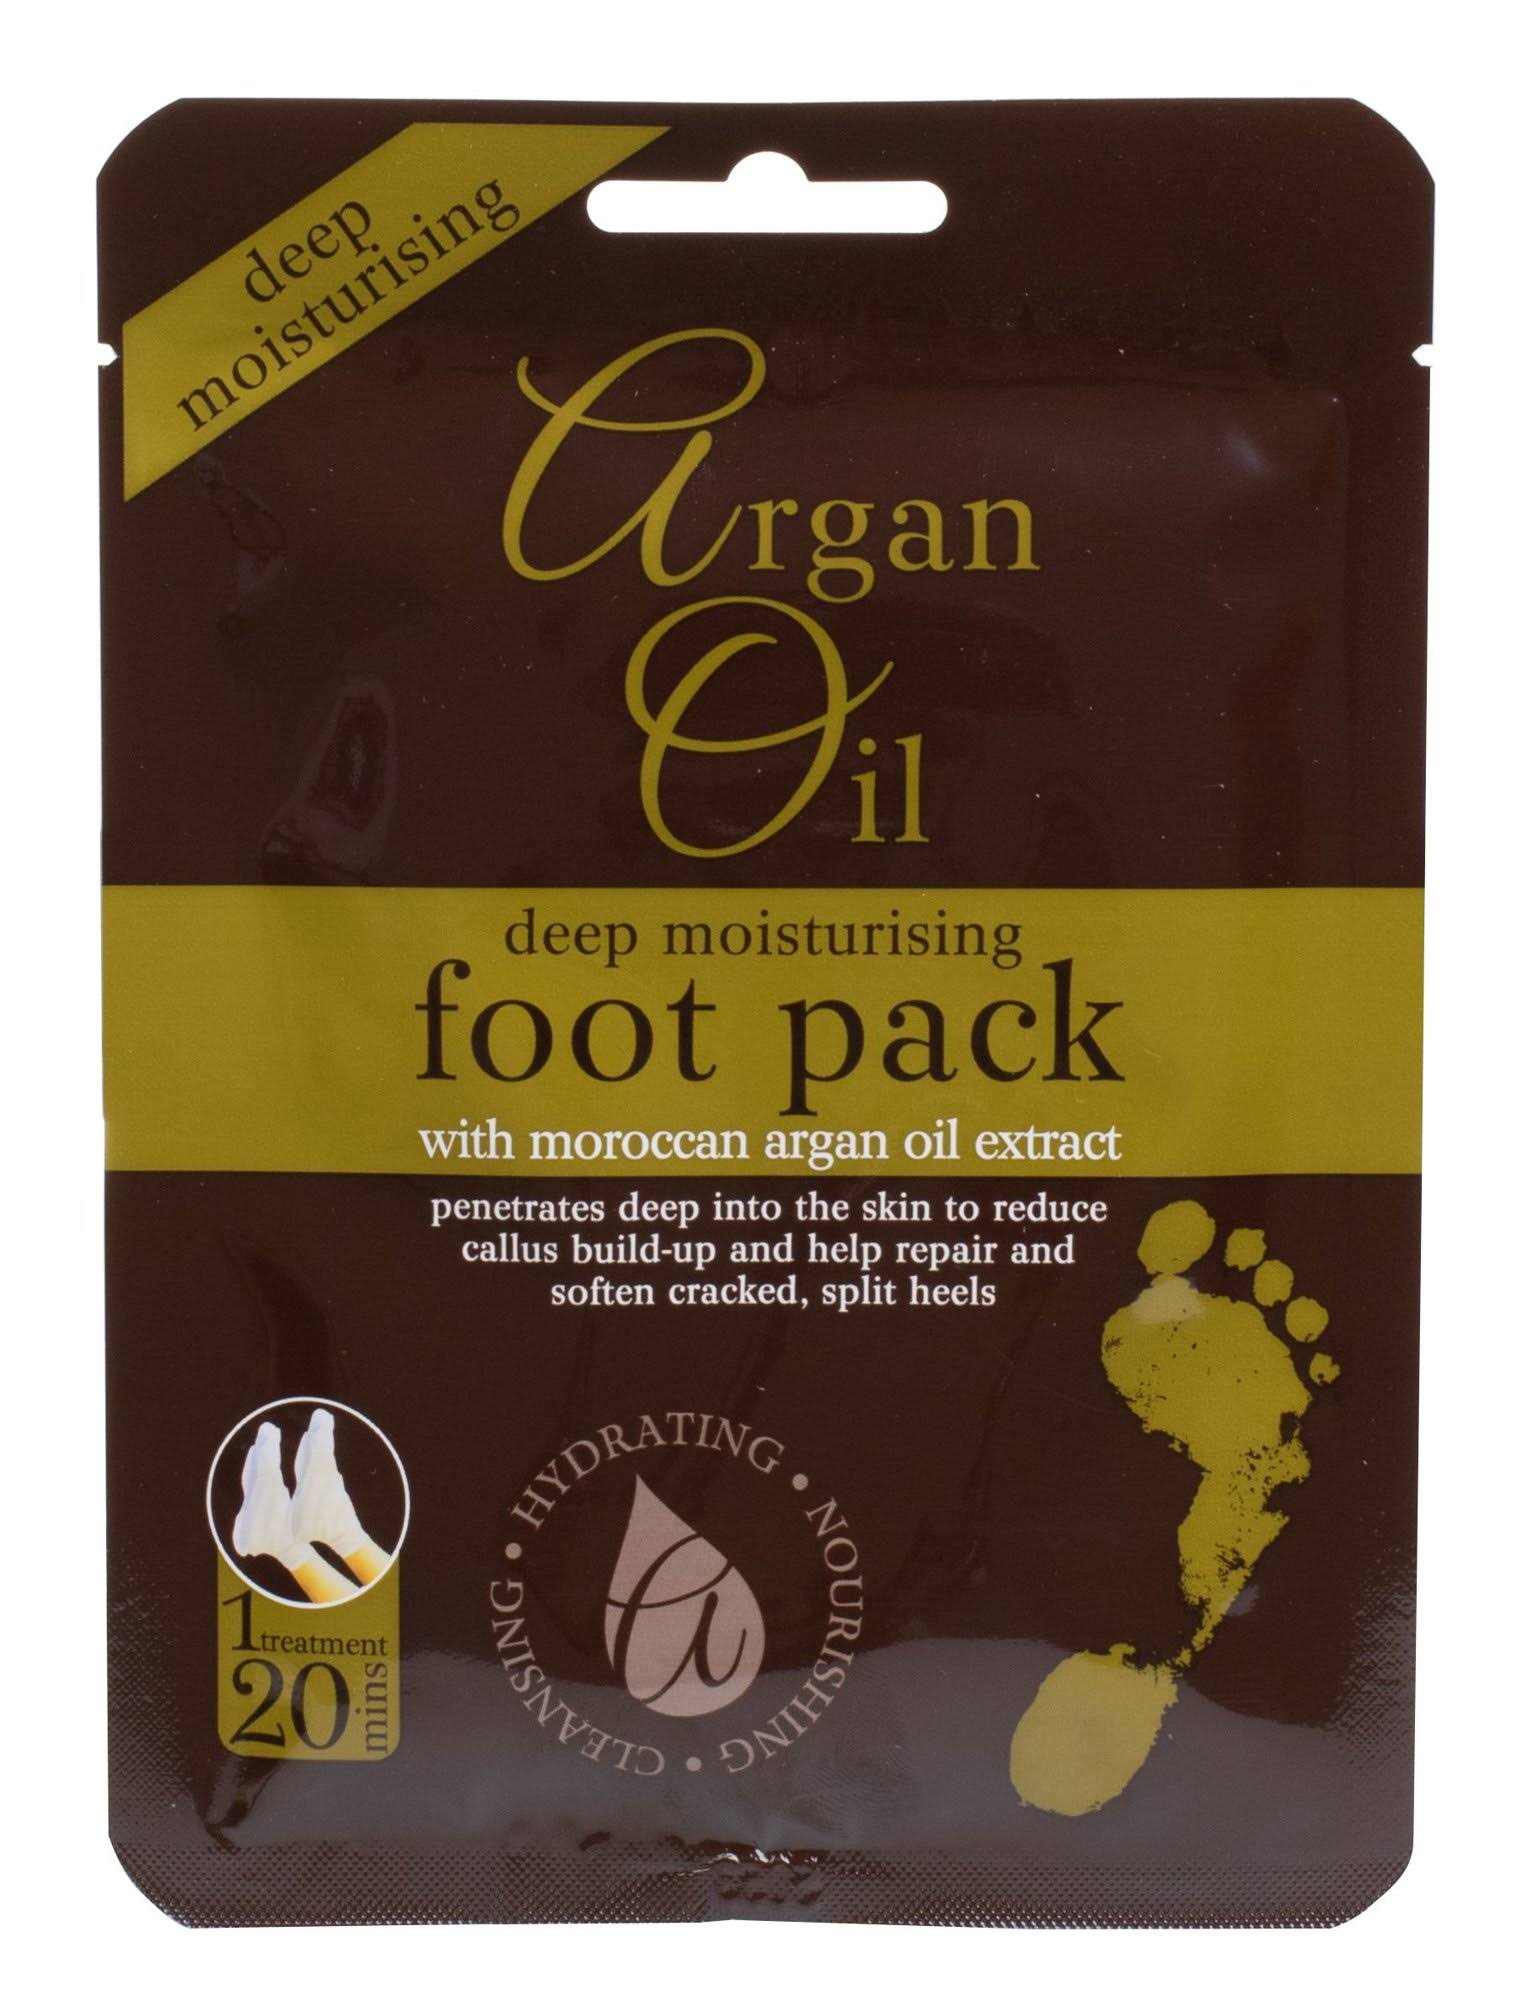 Argan Oil Deep Moisturising Foot Pack - 1 Treatment